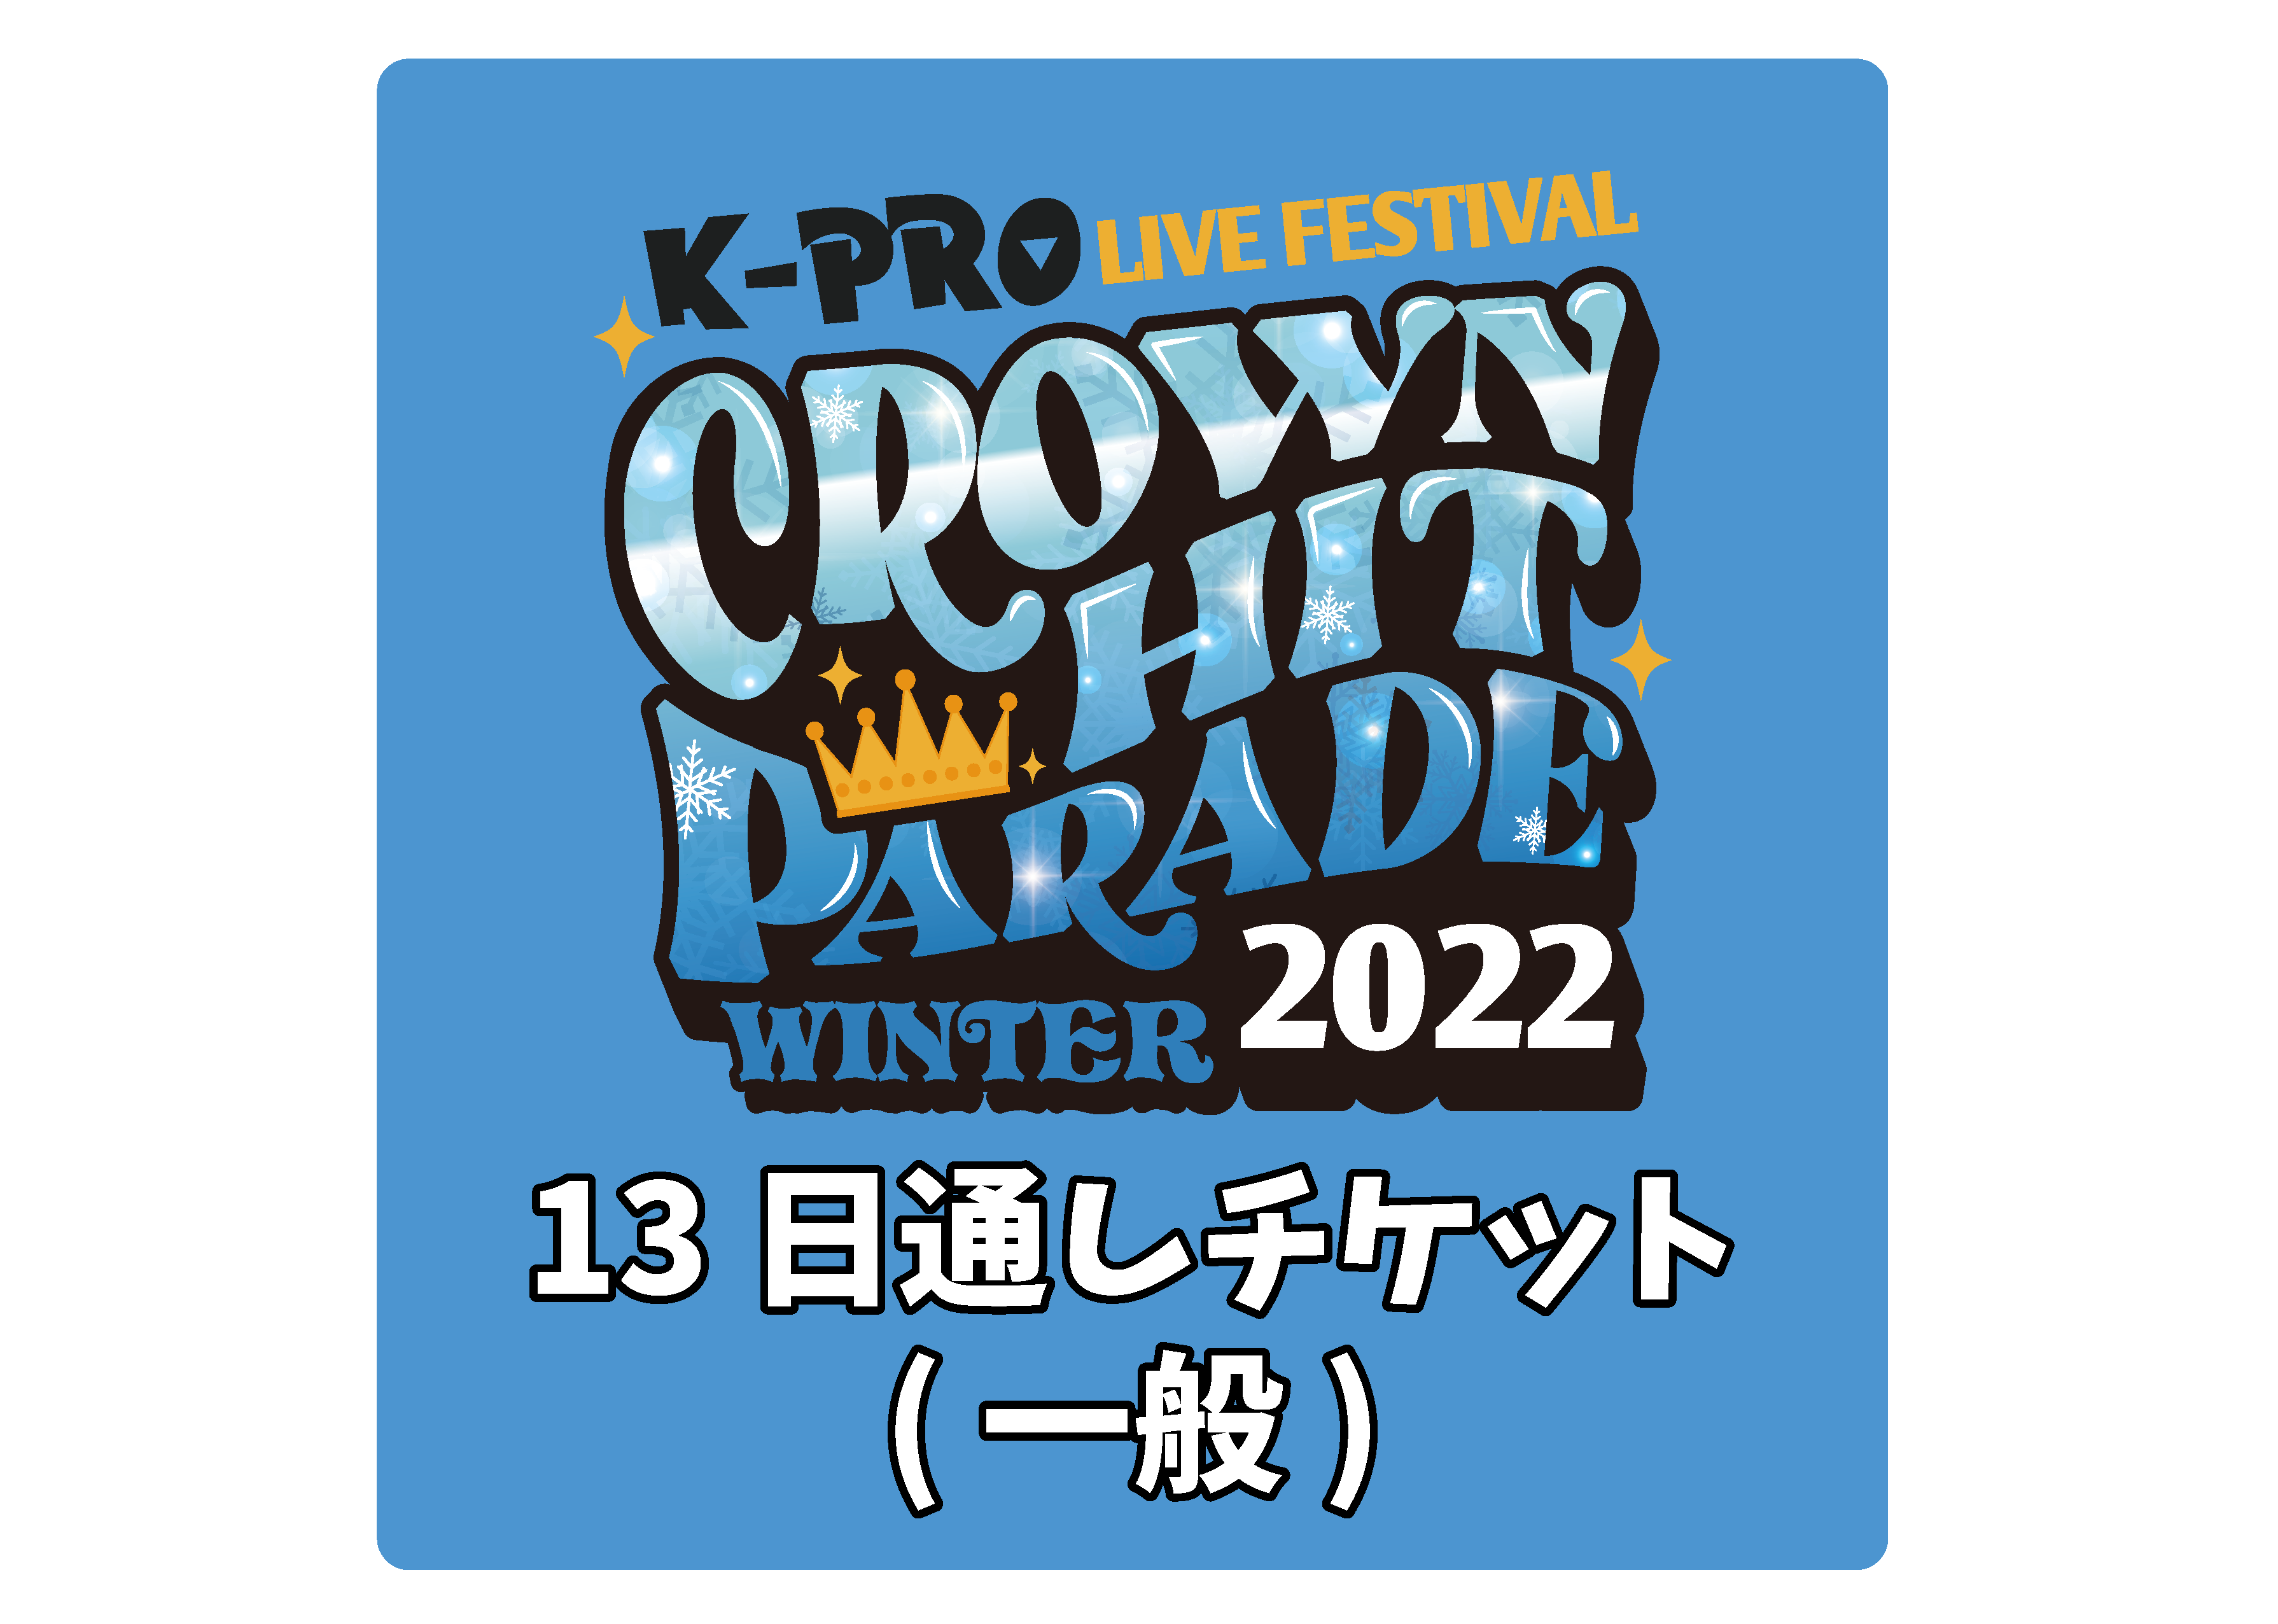 【●2/13通し券】K-PROライブフェスティバル クラウンヒットパレード2022